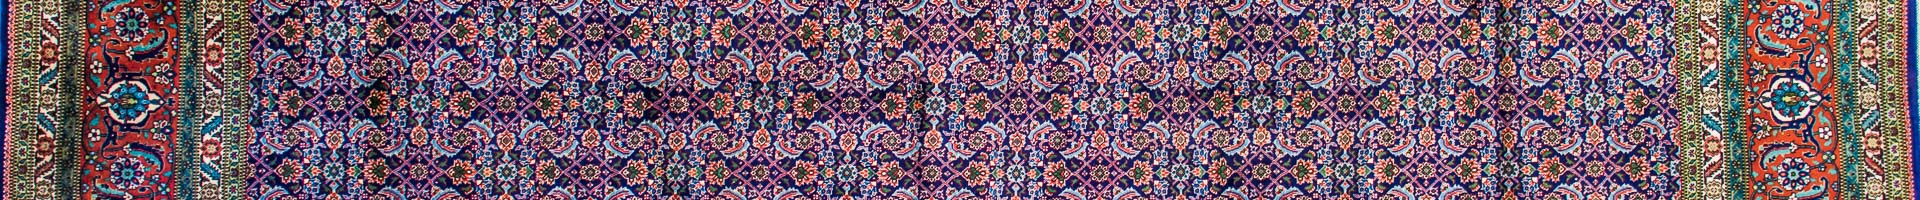 Tabriz Persian Carpet Rug N1Carpet Montreal Canada Tapis Persan